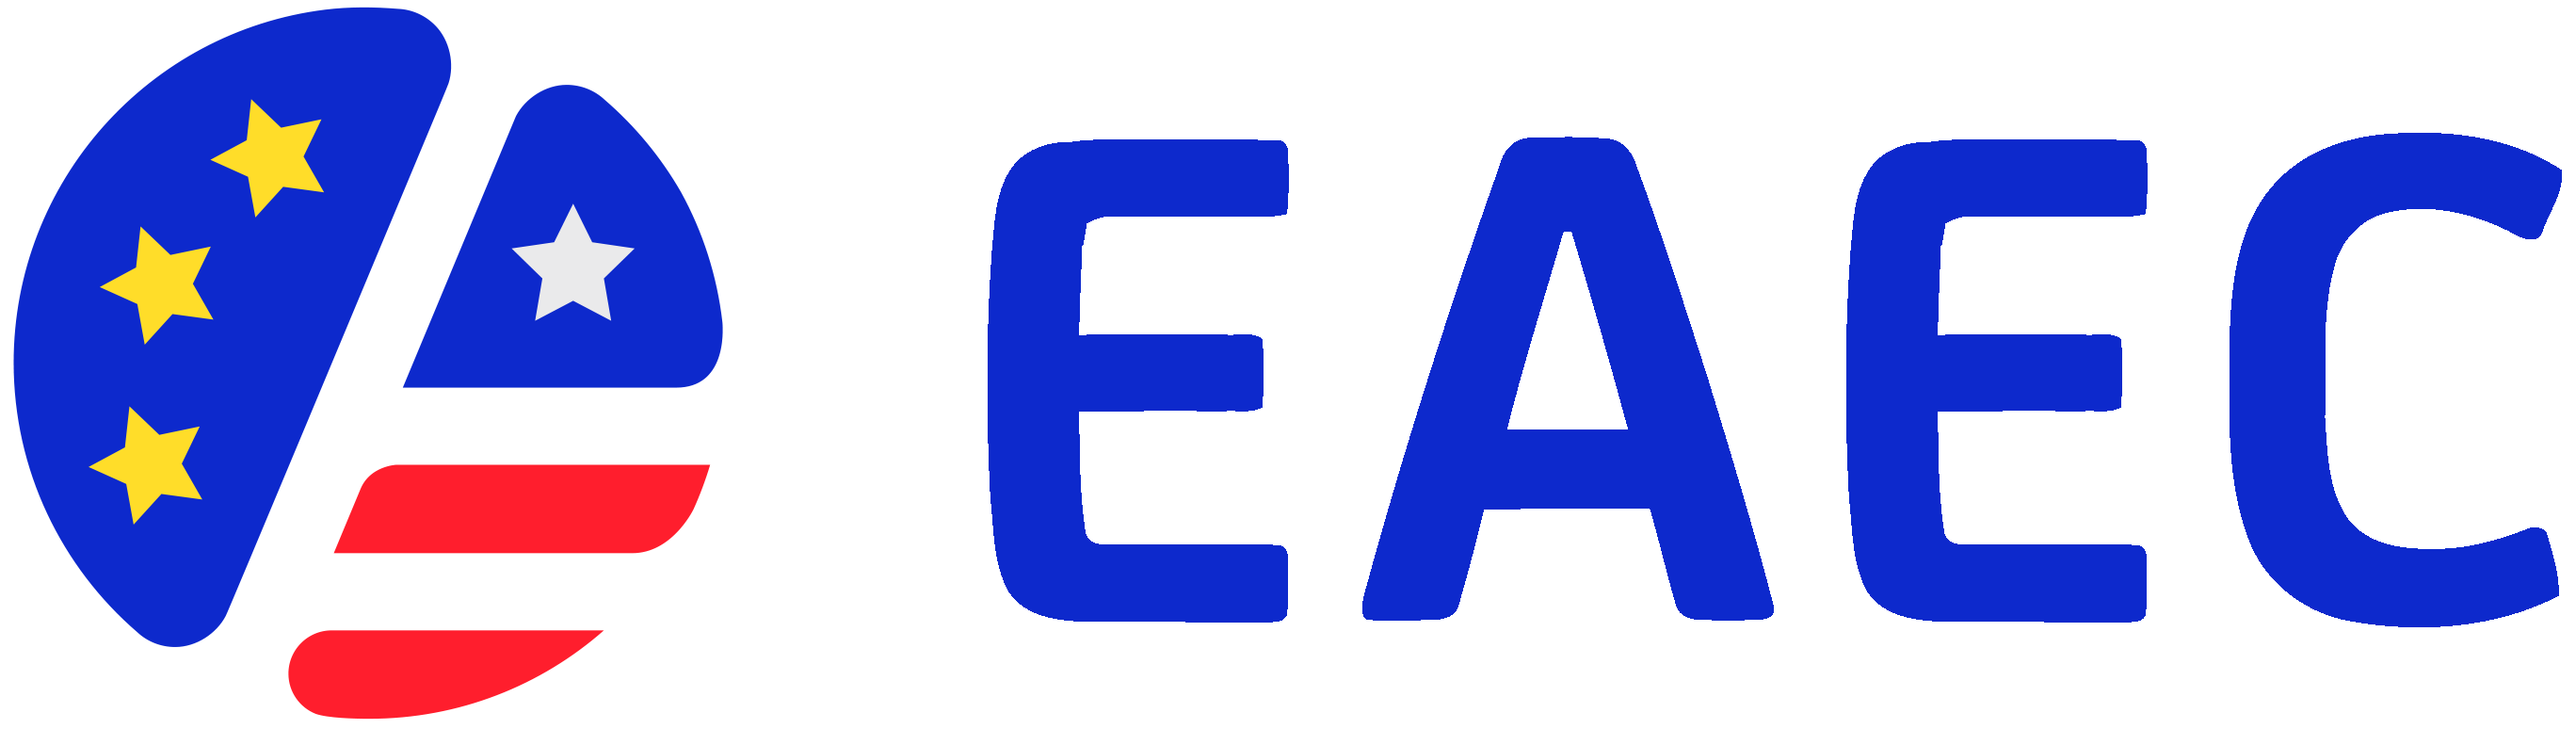 Logo EAEC